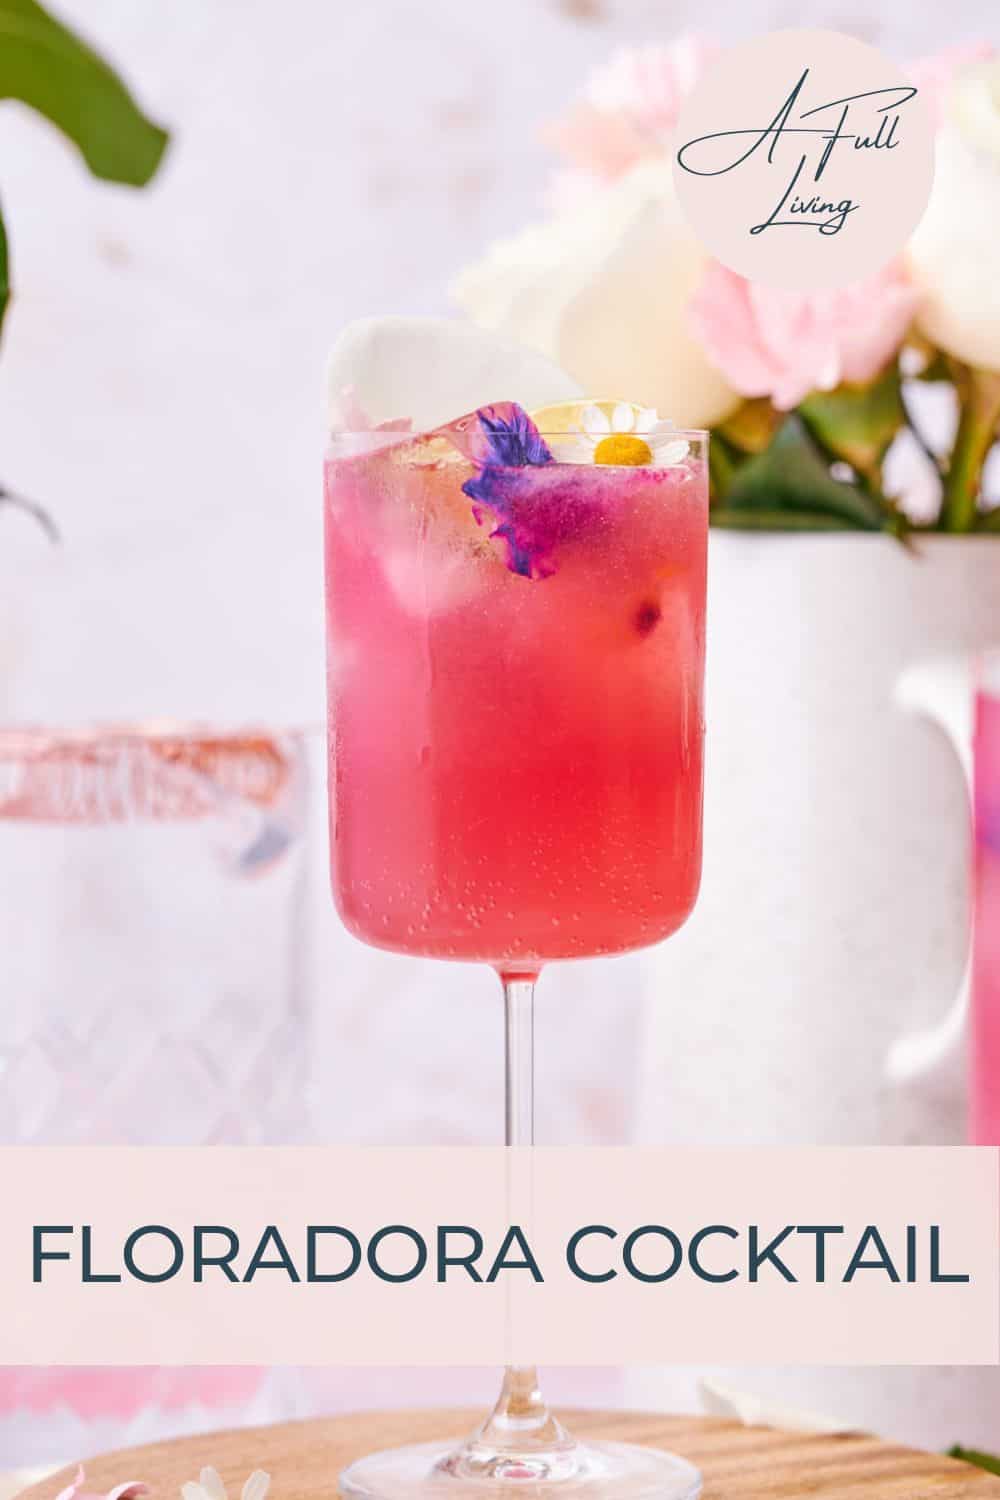 Floradora cocktail.